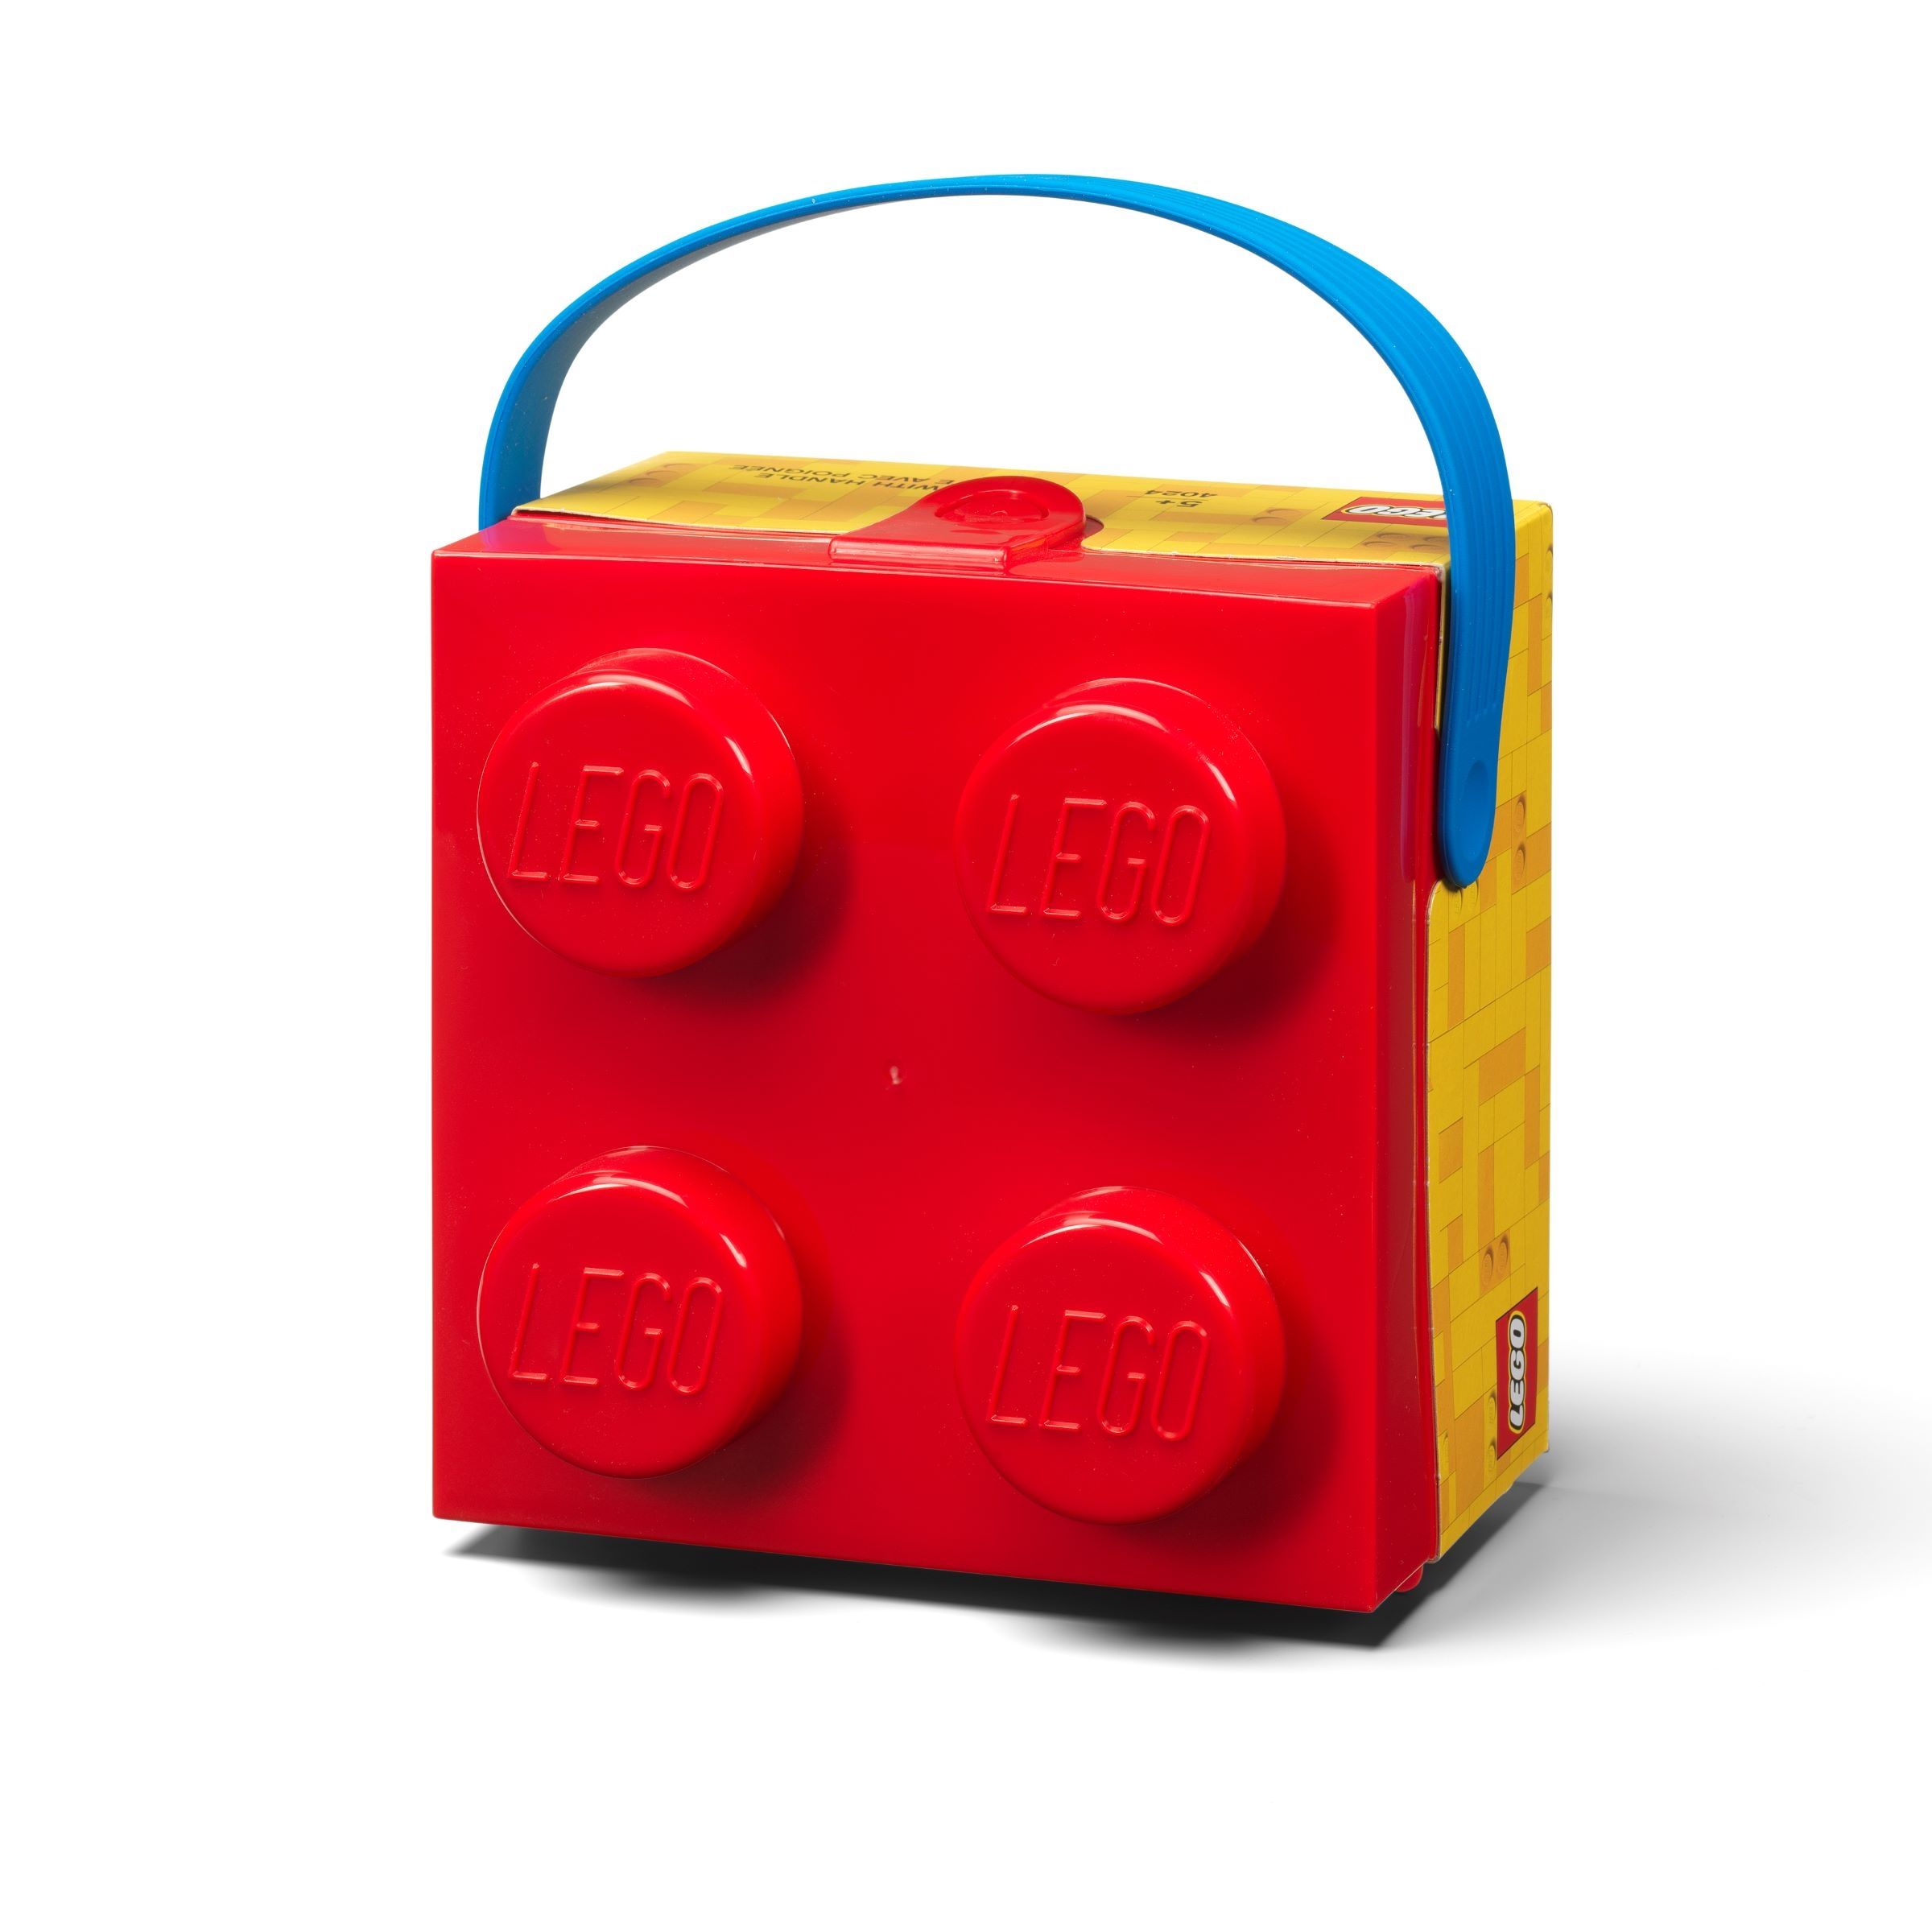 LEGO Gear 5007269 Box mit Tragegriff in Rot LEGO_5007269_alt1.jpg